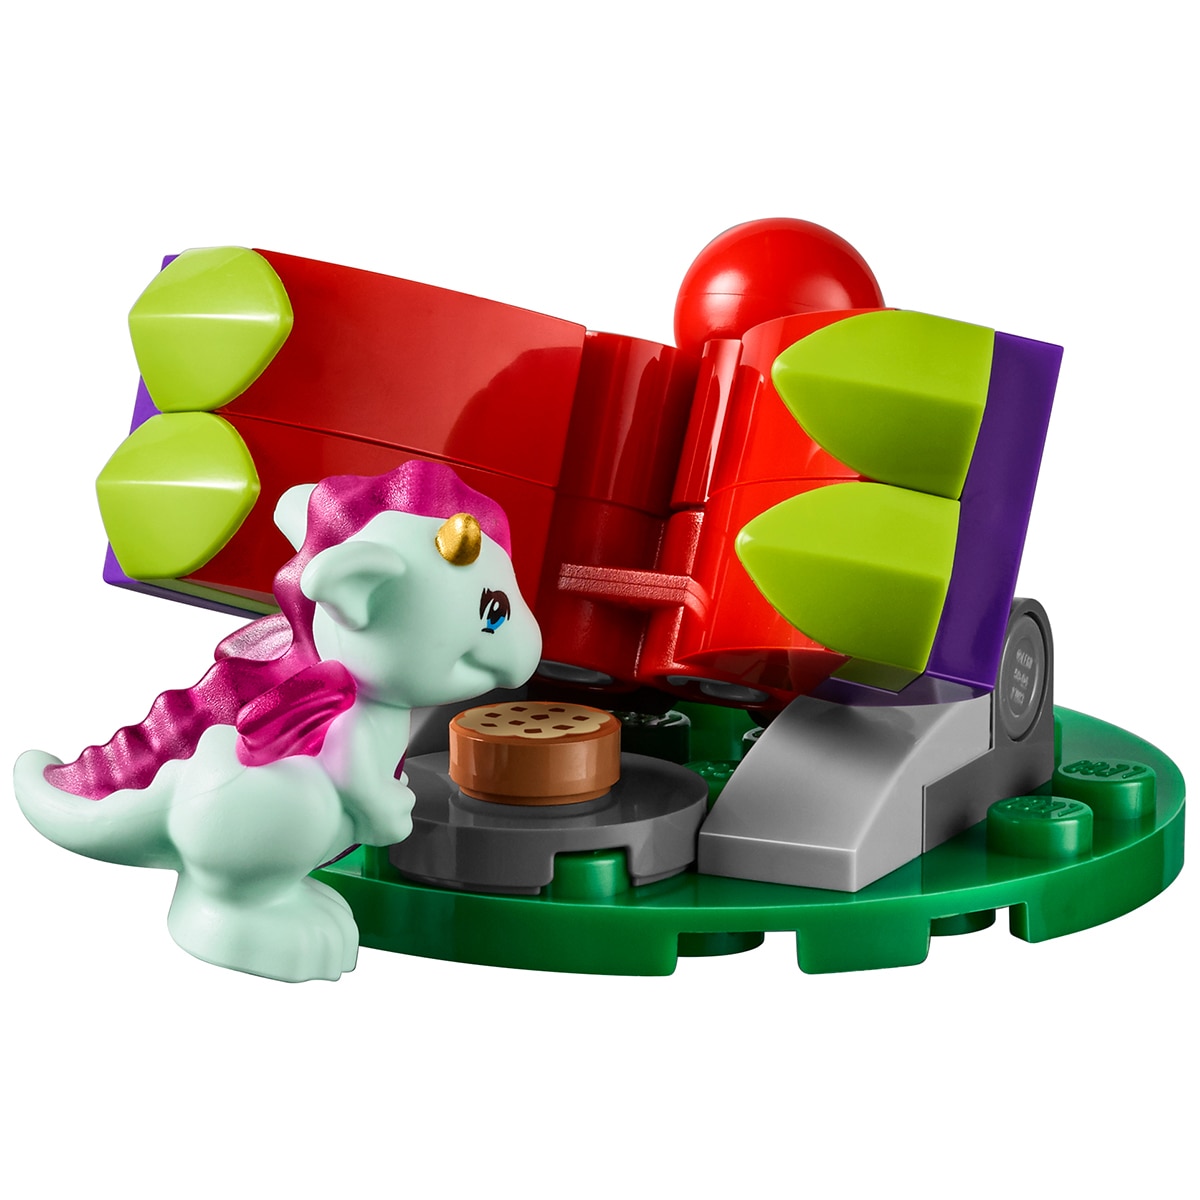 Lego Elves - Rosalyn's Healing Hideout